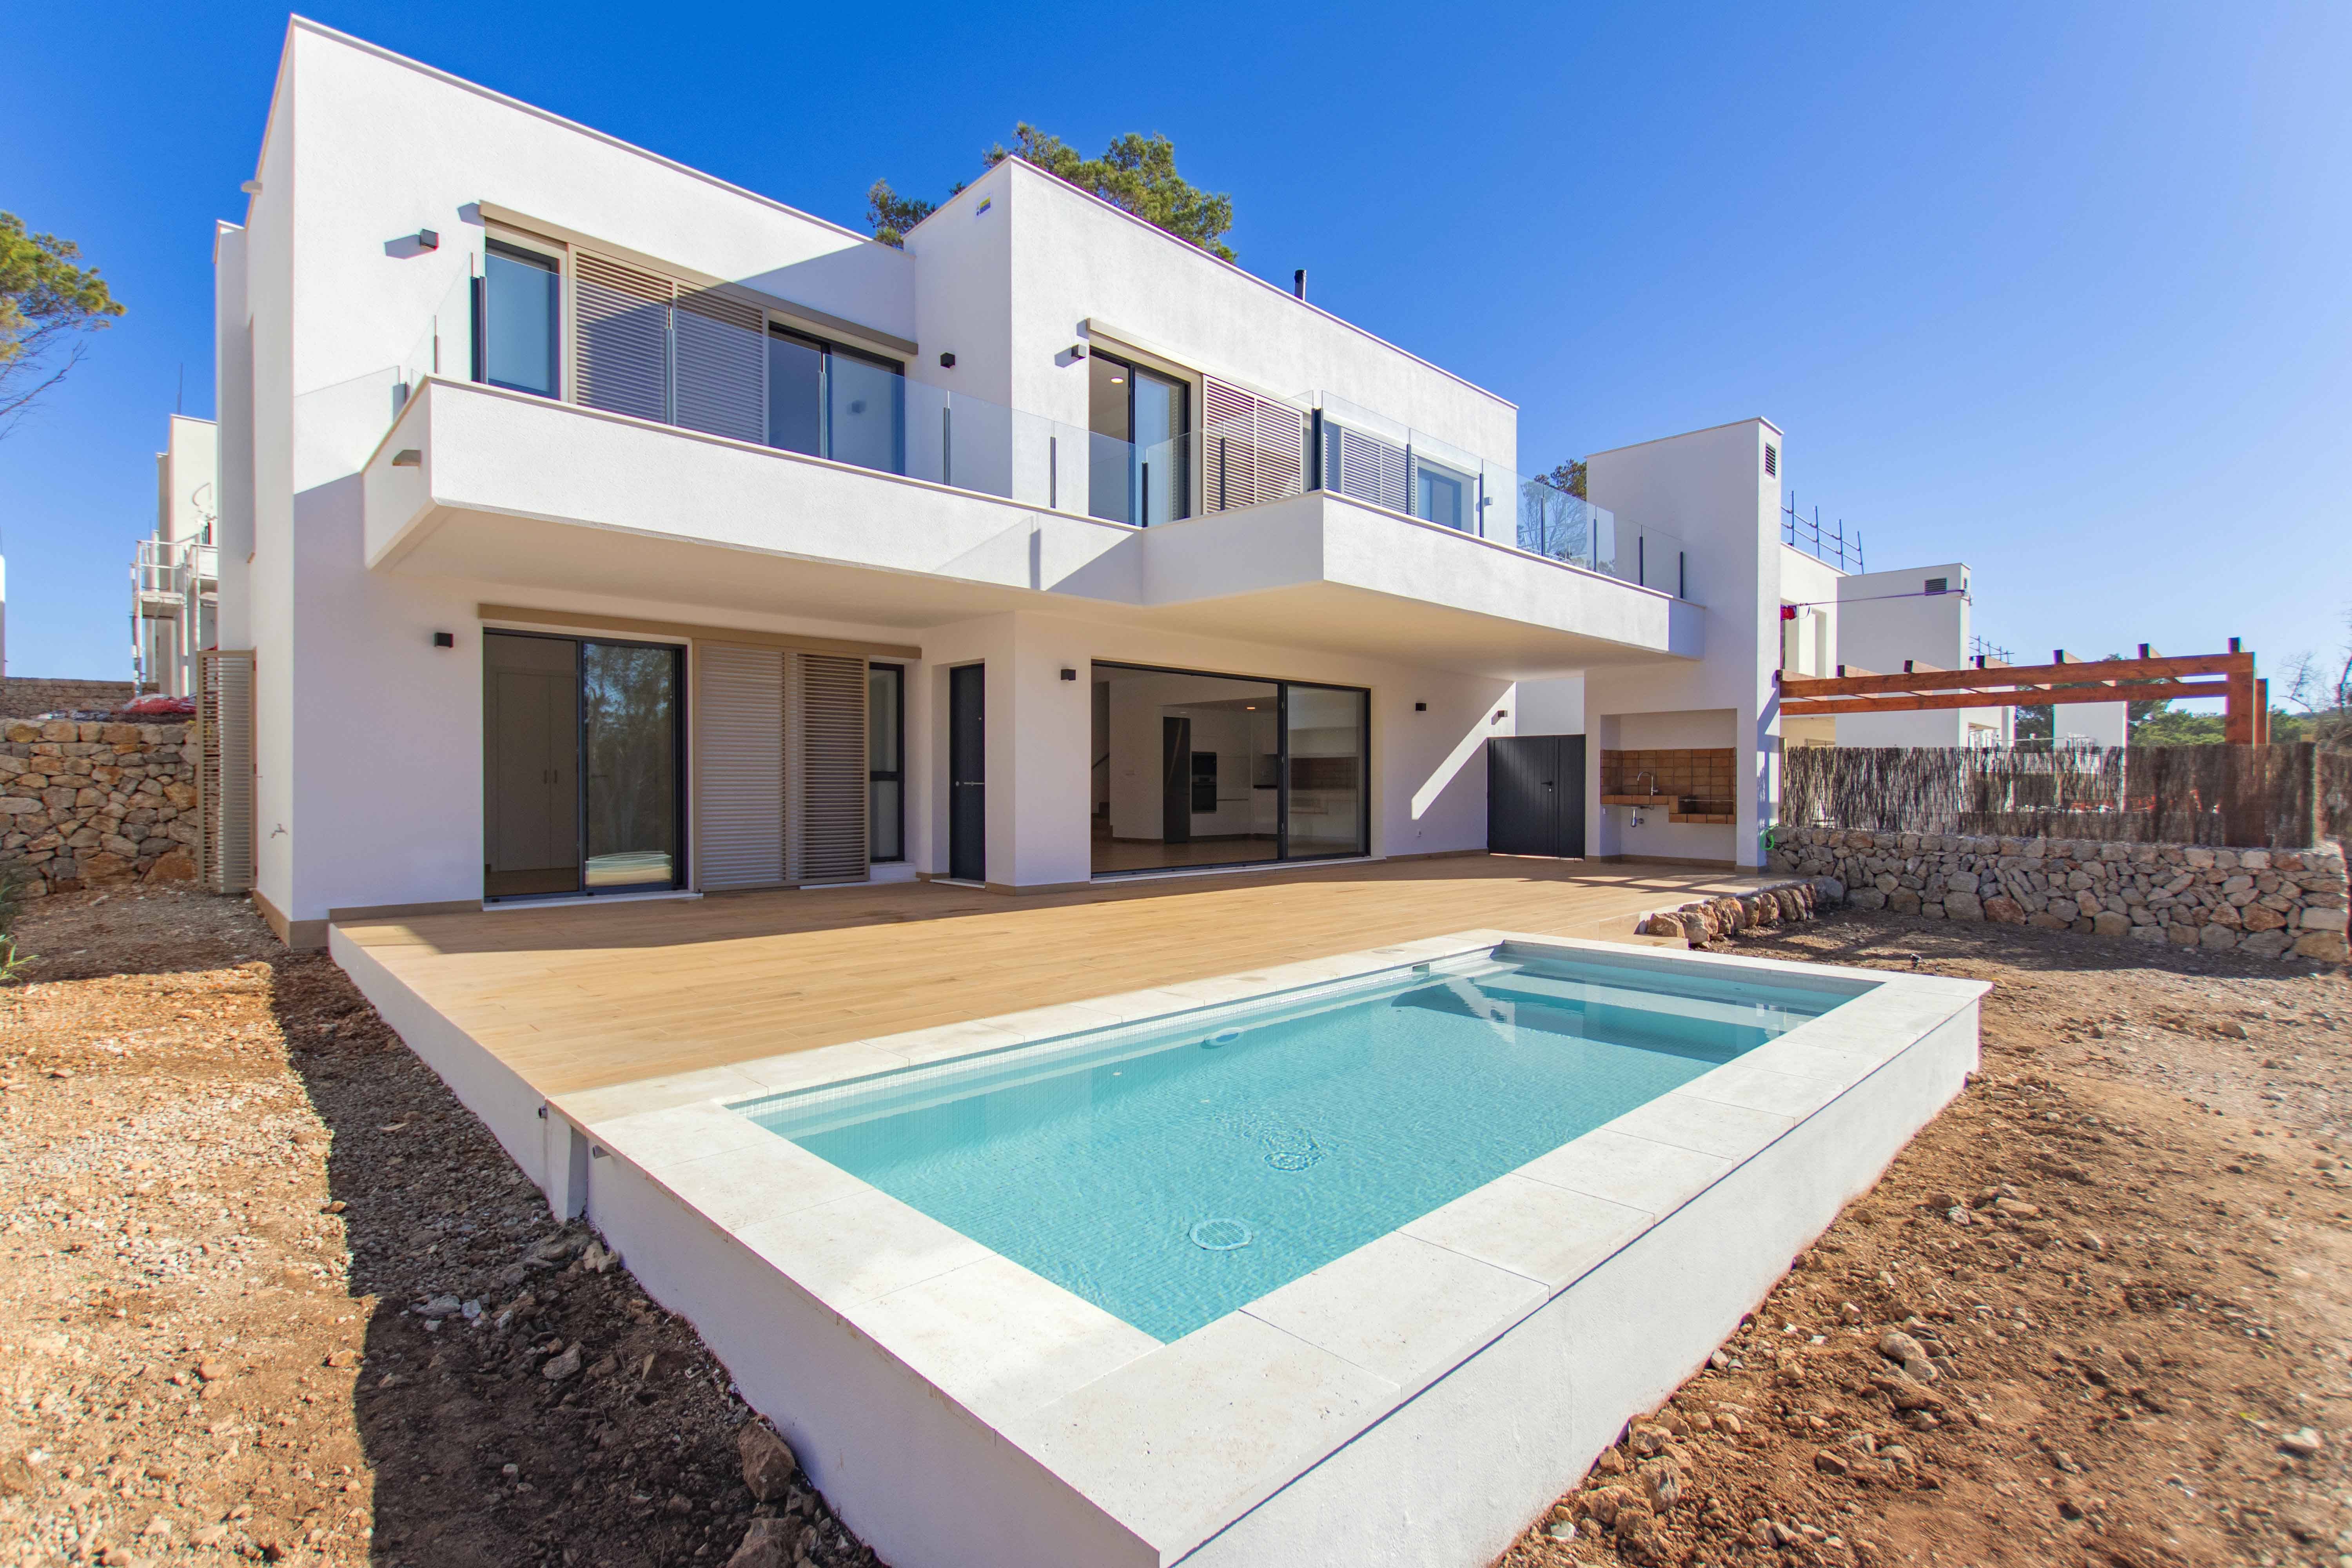 Promotion - Sa Llosa Homes, développement exclusif de 50 villas à Son Parc, Minorque.